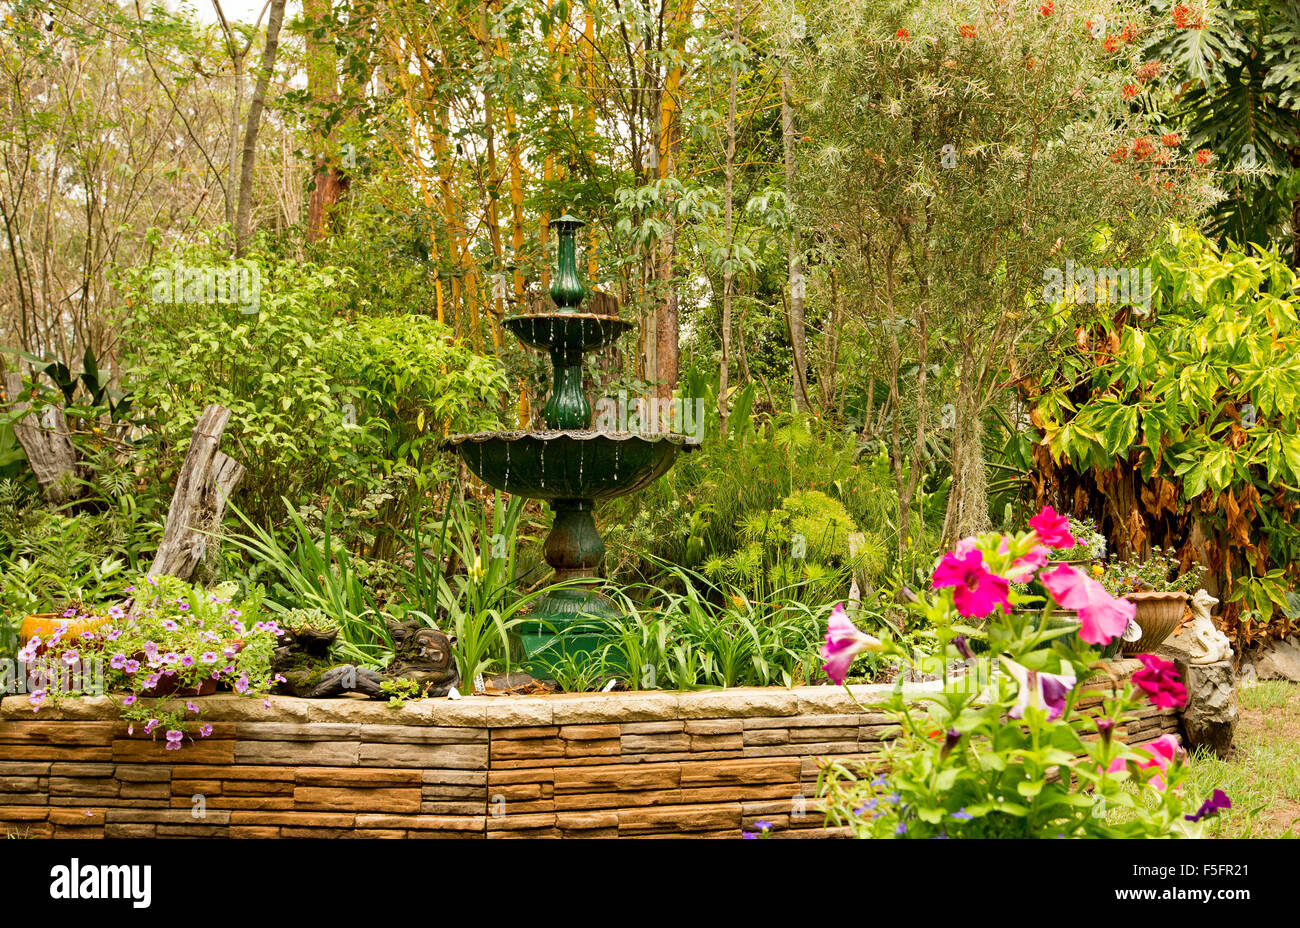 Giardino decorativo caratteristica con un basso muro di pietra, fontana ornata & piante in contenitori, orlata da arbusti, bambù & Tall Trees Foto Stock